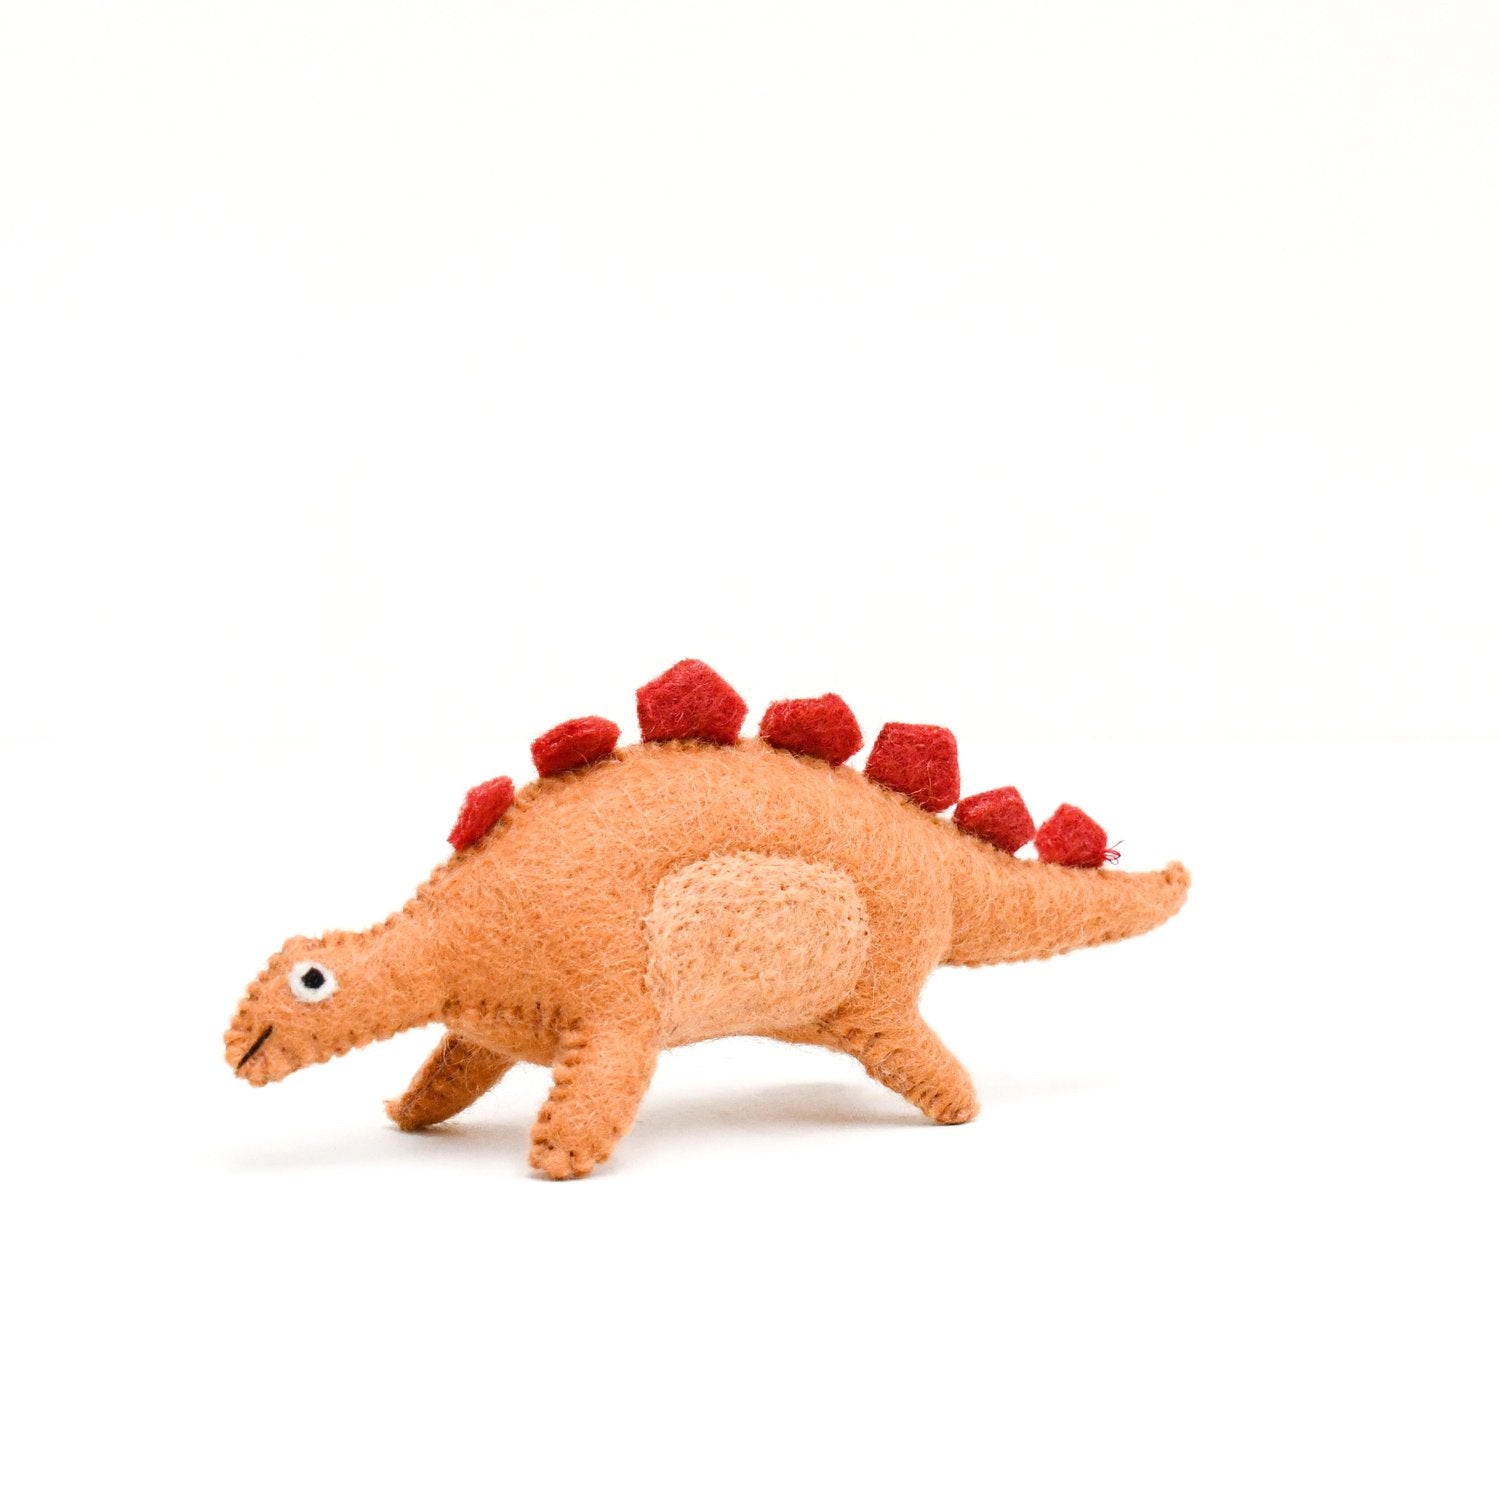 Felt Stegosaurus-Fun-Little Fish Co.